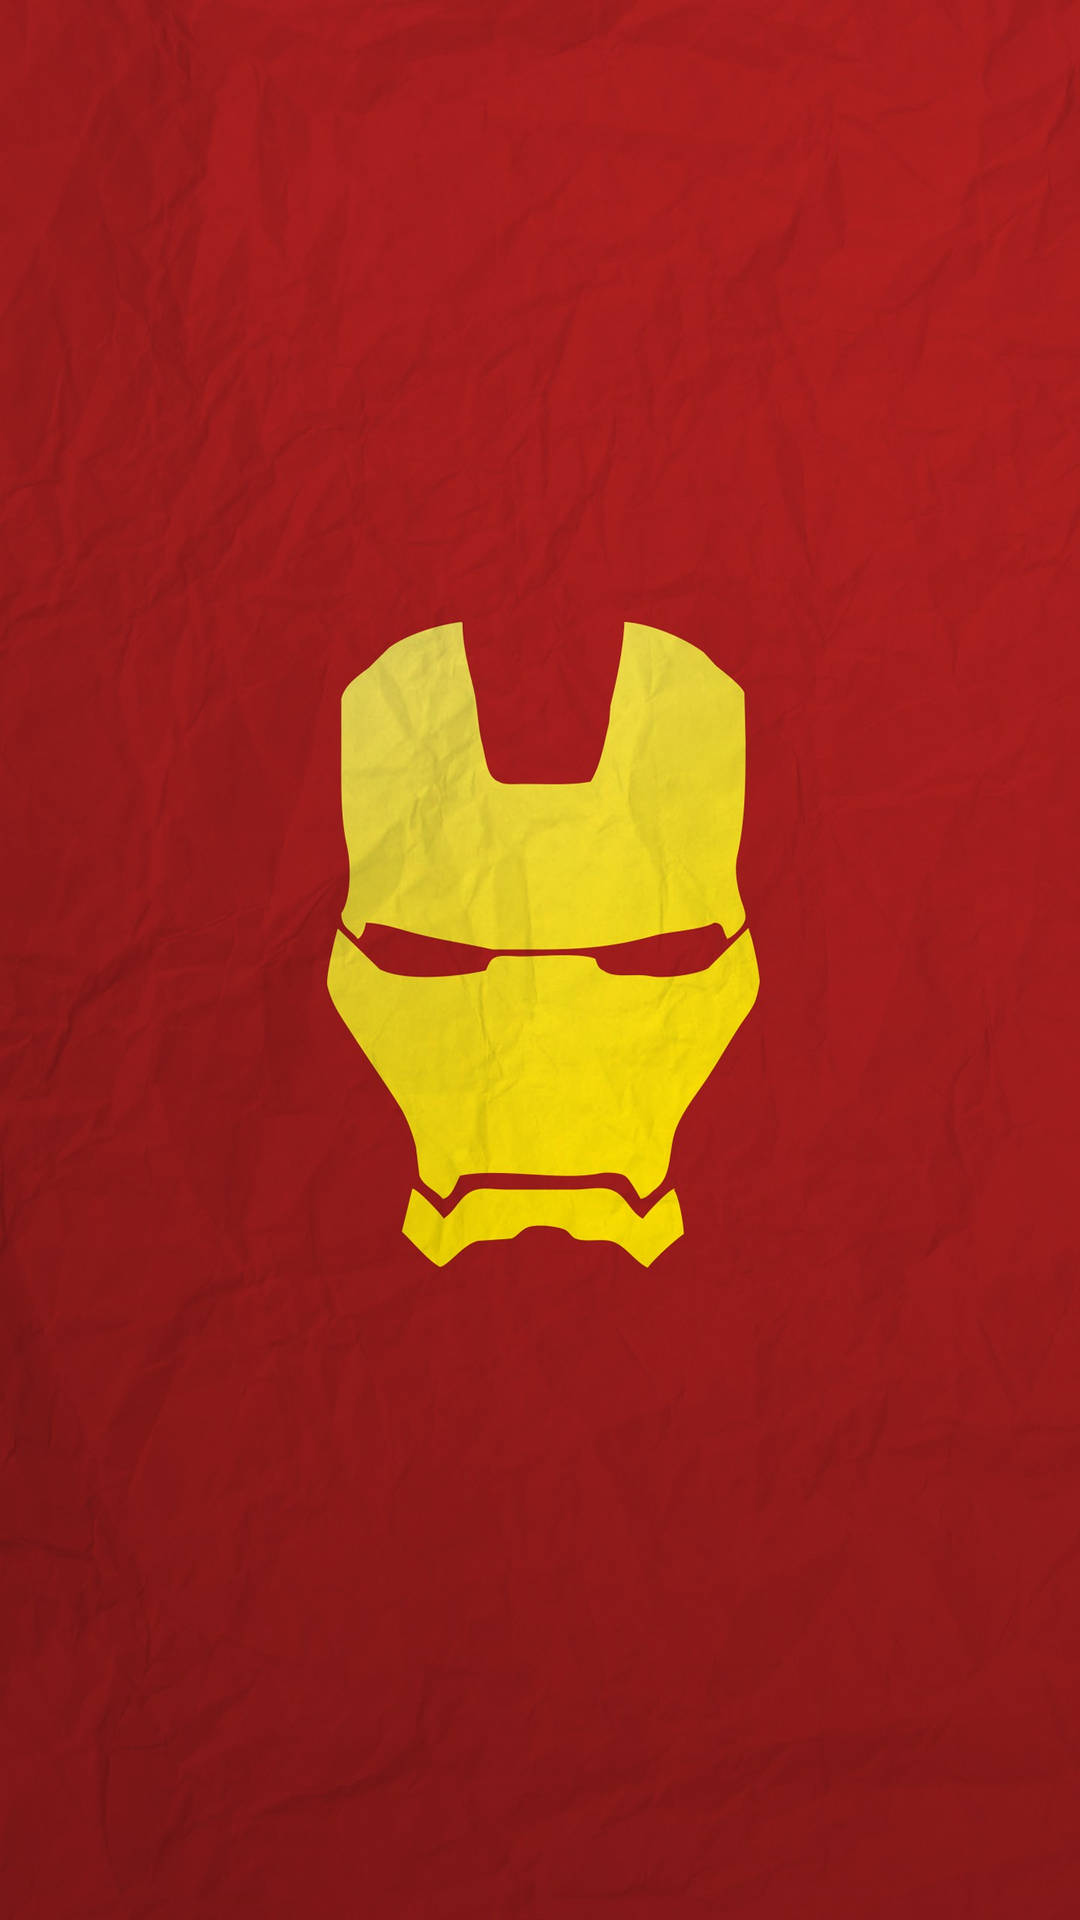 Mobilbakgrundsbild Med Minimalistisk Hd Iron Man Superhjälte. Wallpaper